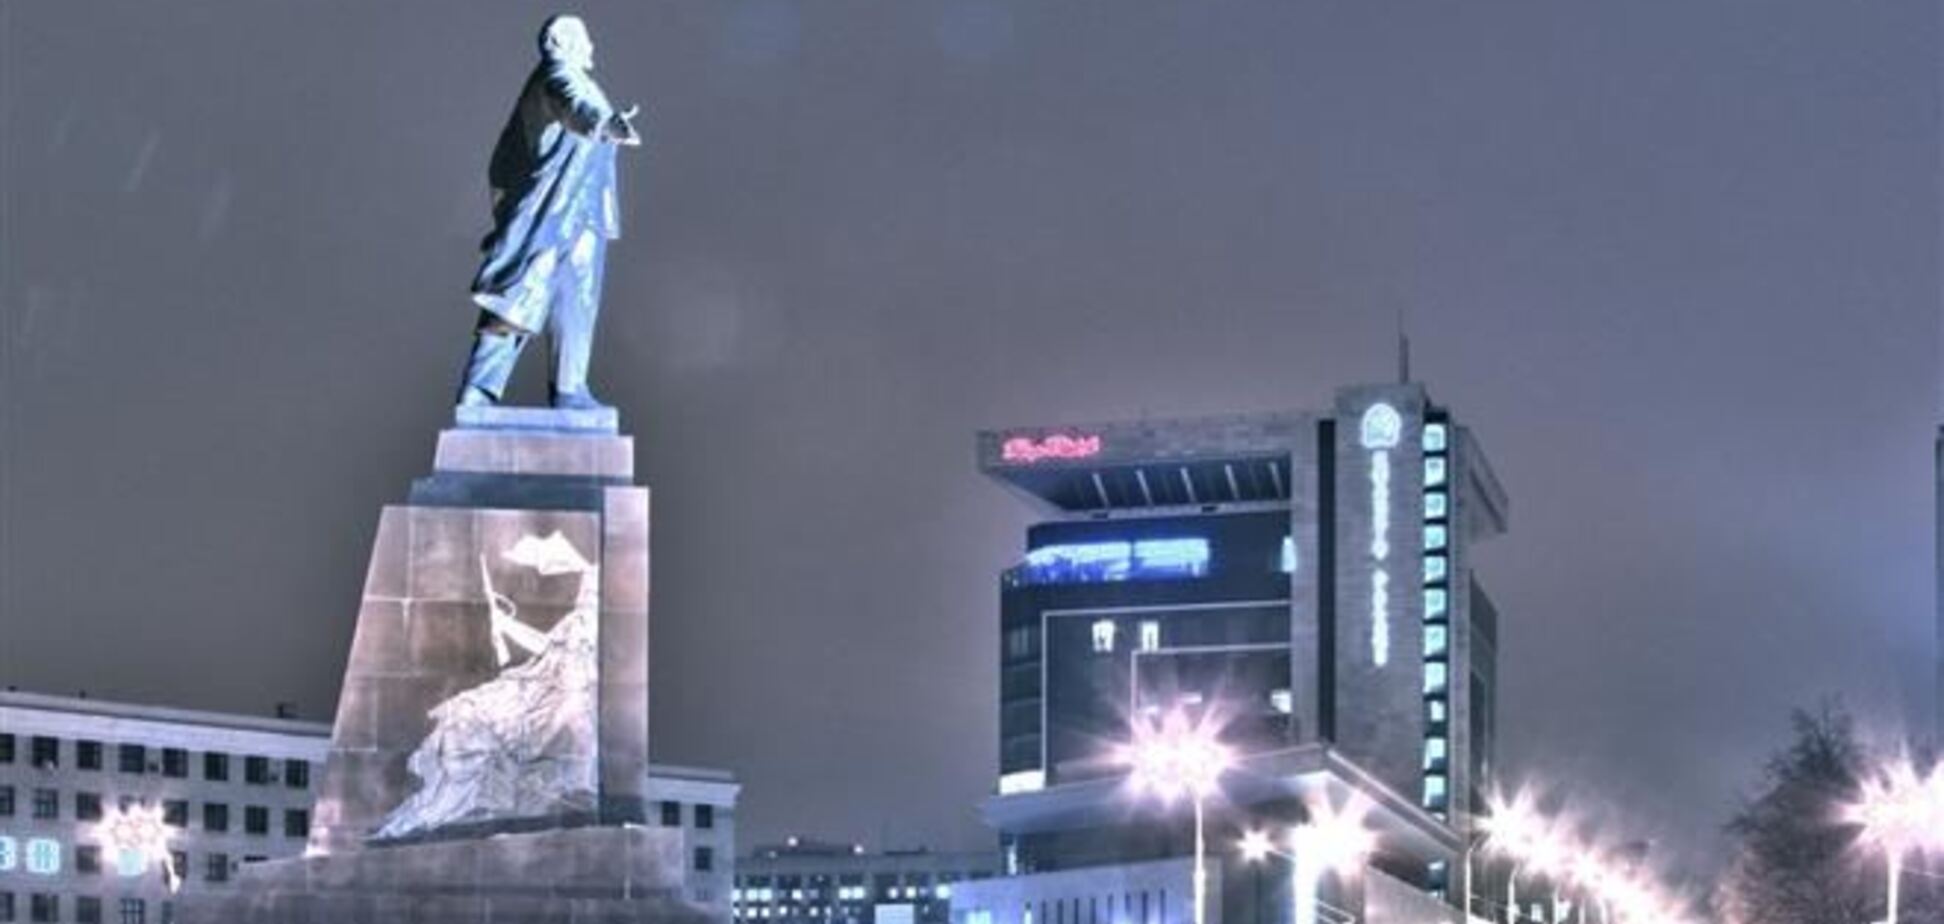  Памятник Ленину в Харькове не снесут, вопрос сноса обсудят с харьковчанами